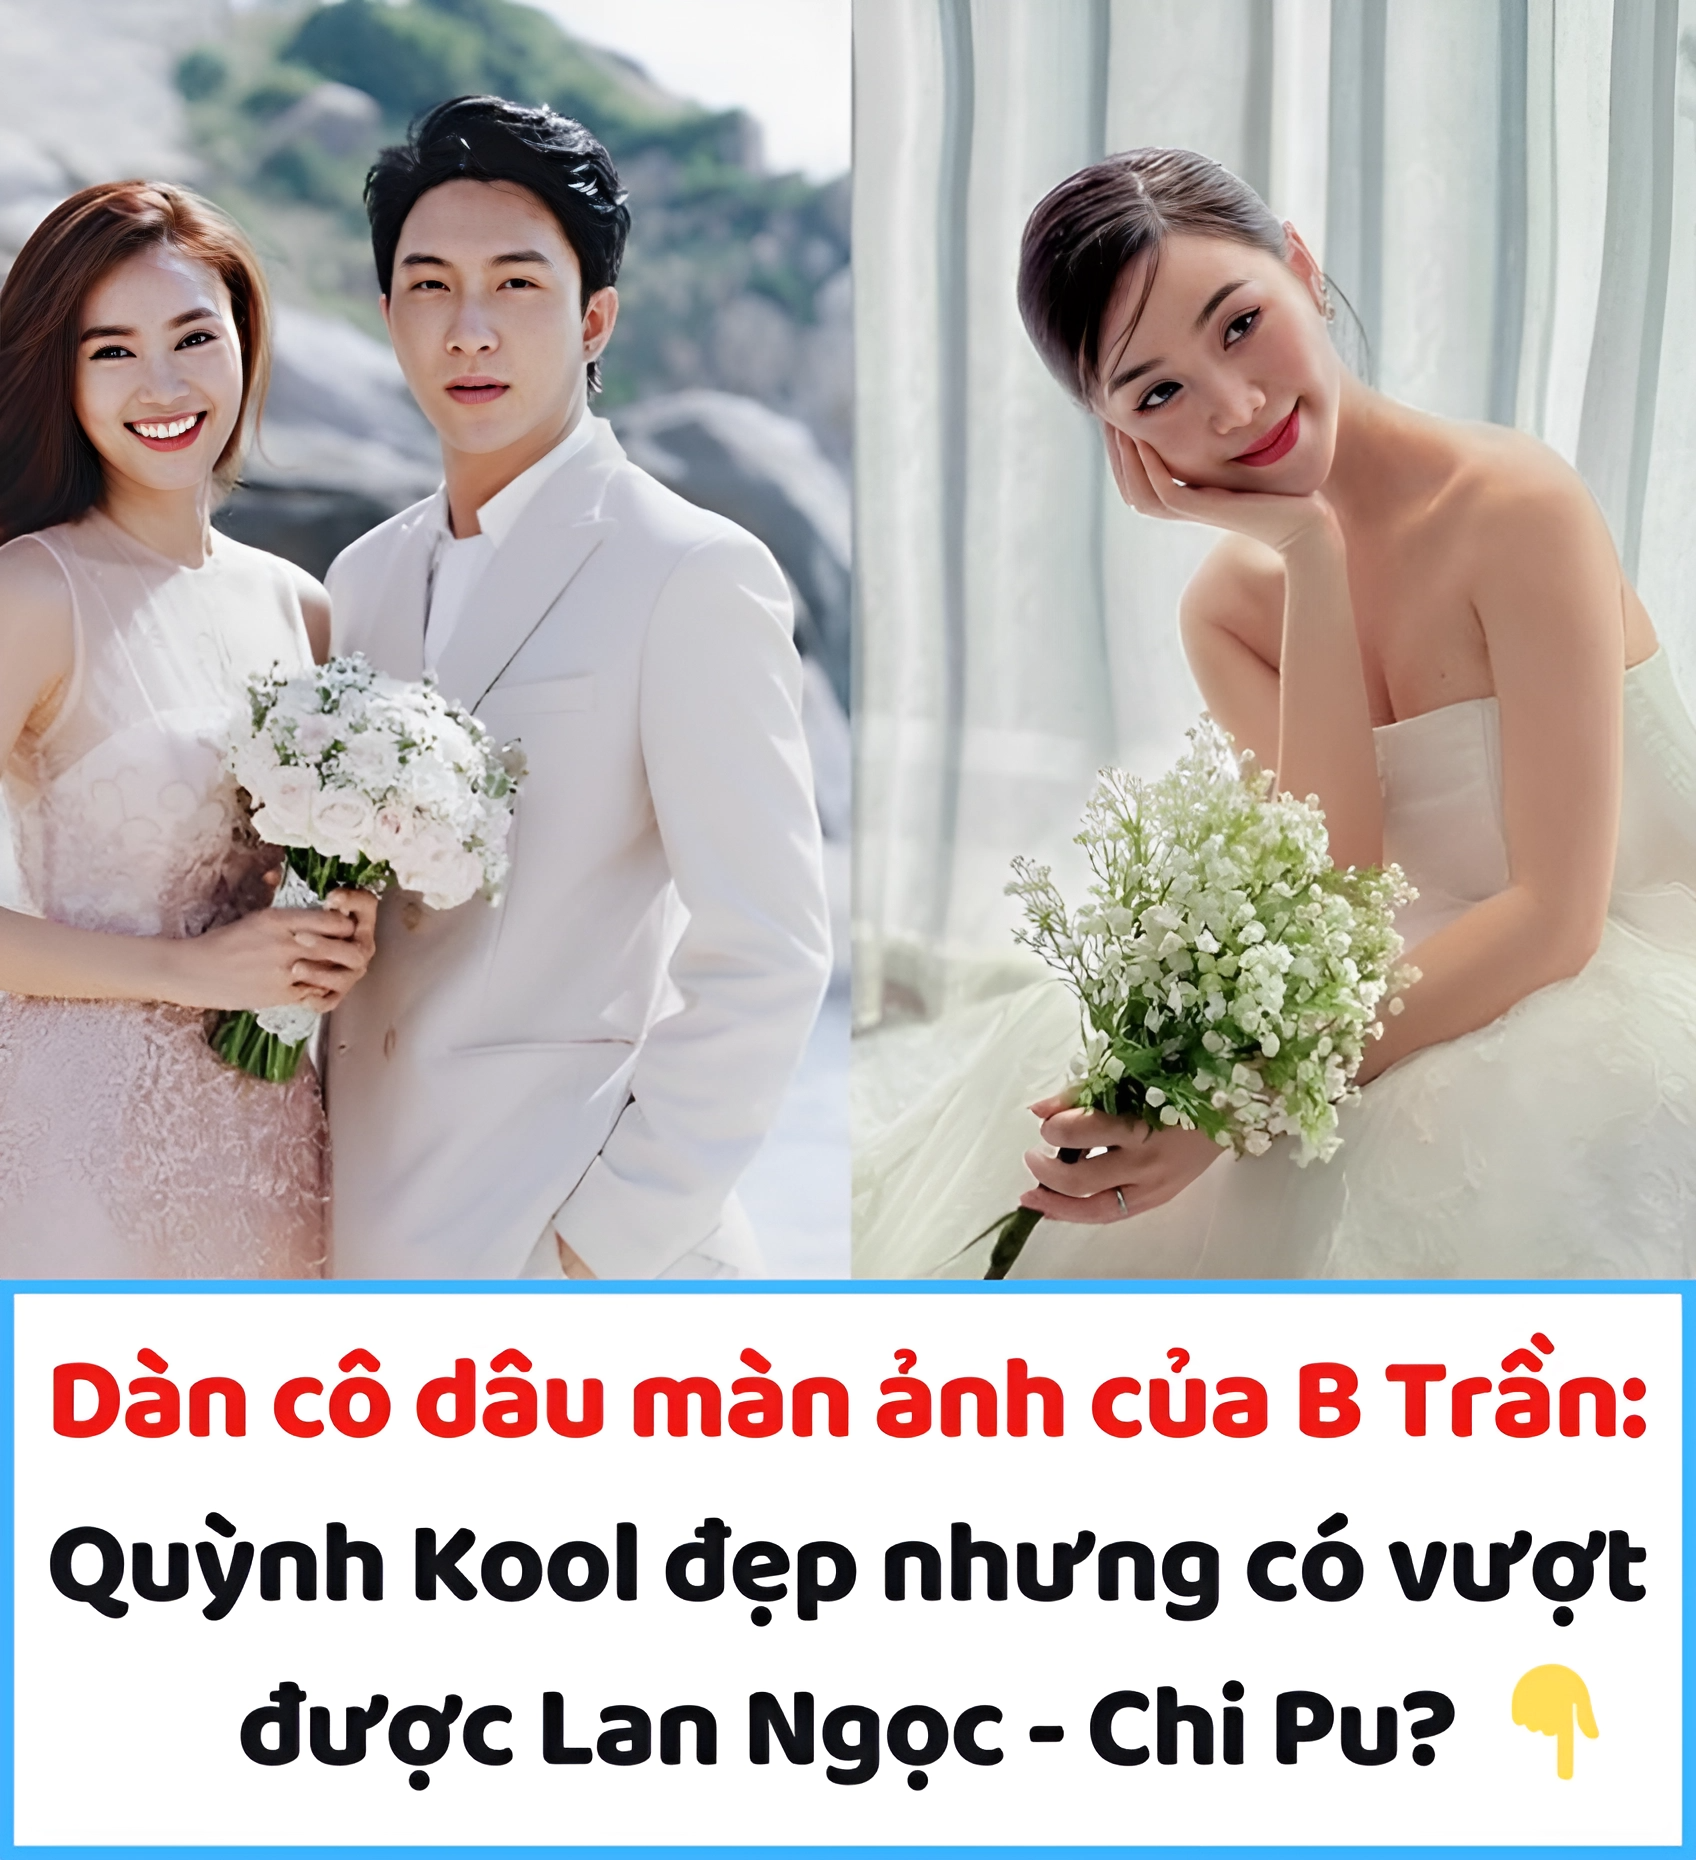 Dàn cô dâu màn ảnh của B Trần: Quỳnh Kool đẹp nhưng có vượt được Lan Ngọc – Chi Pu?